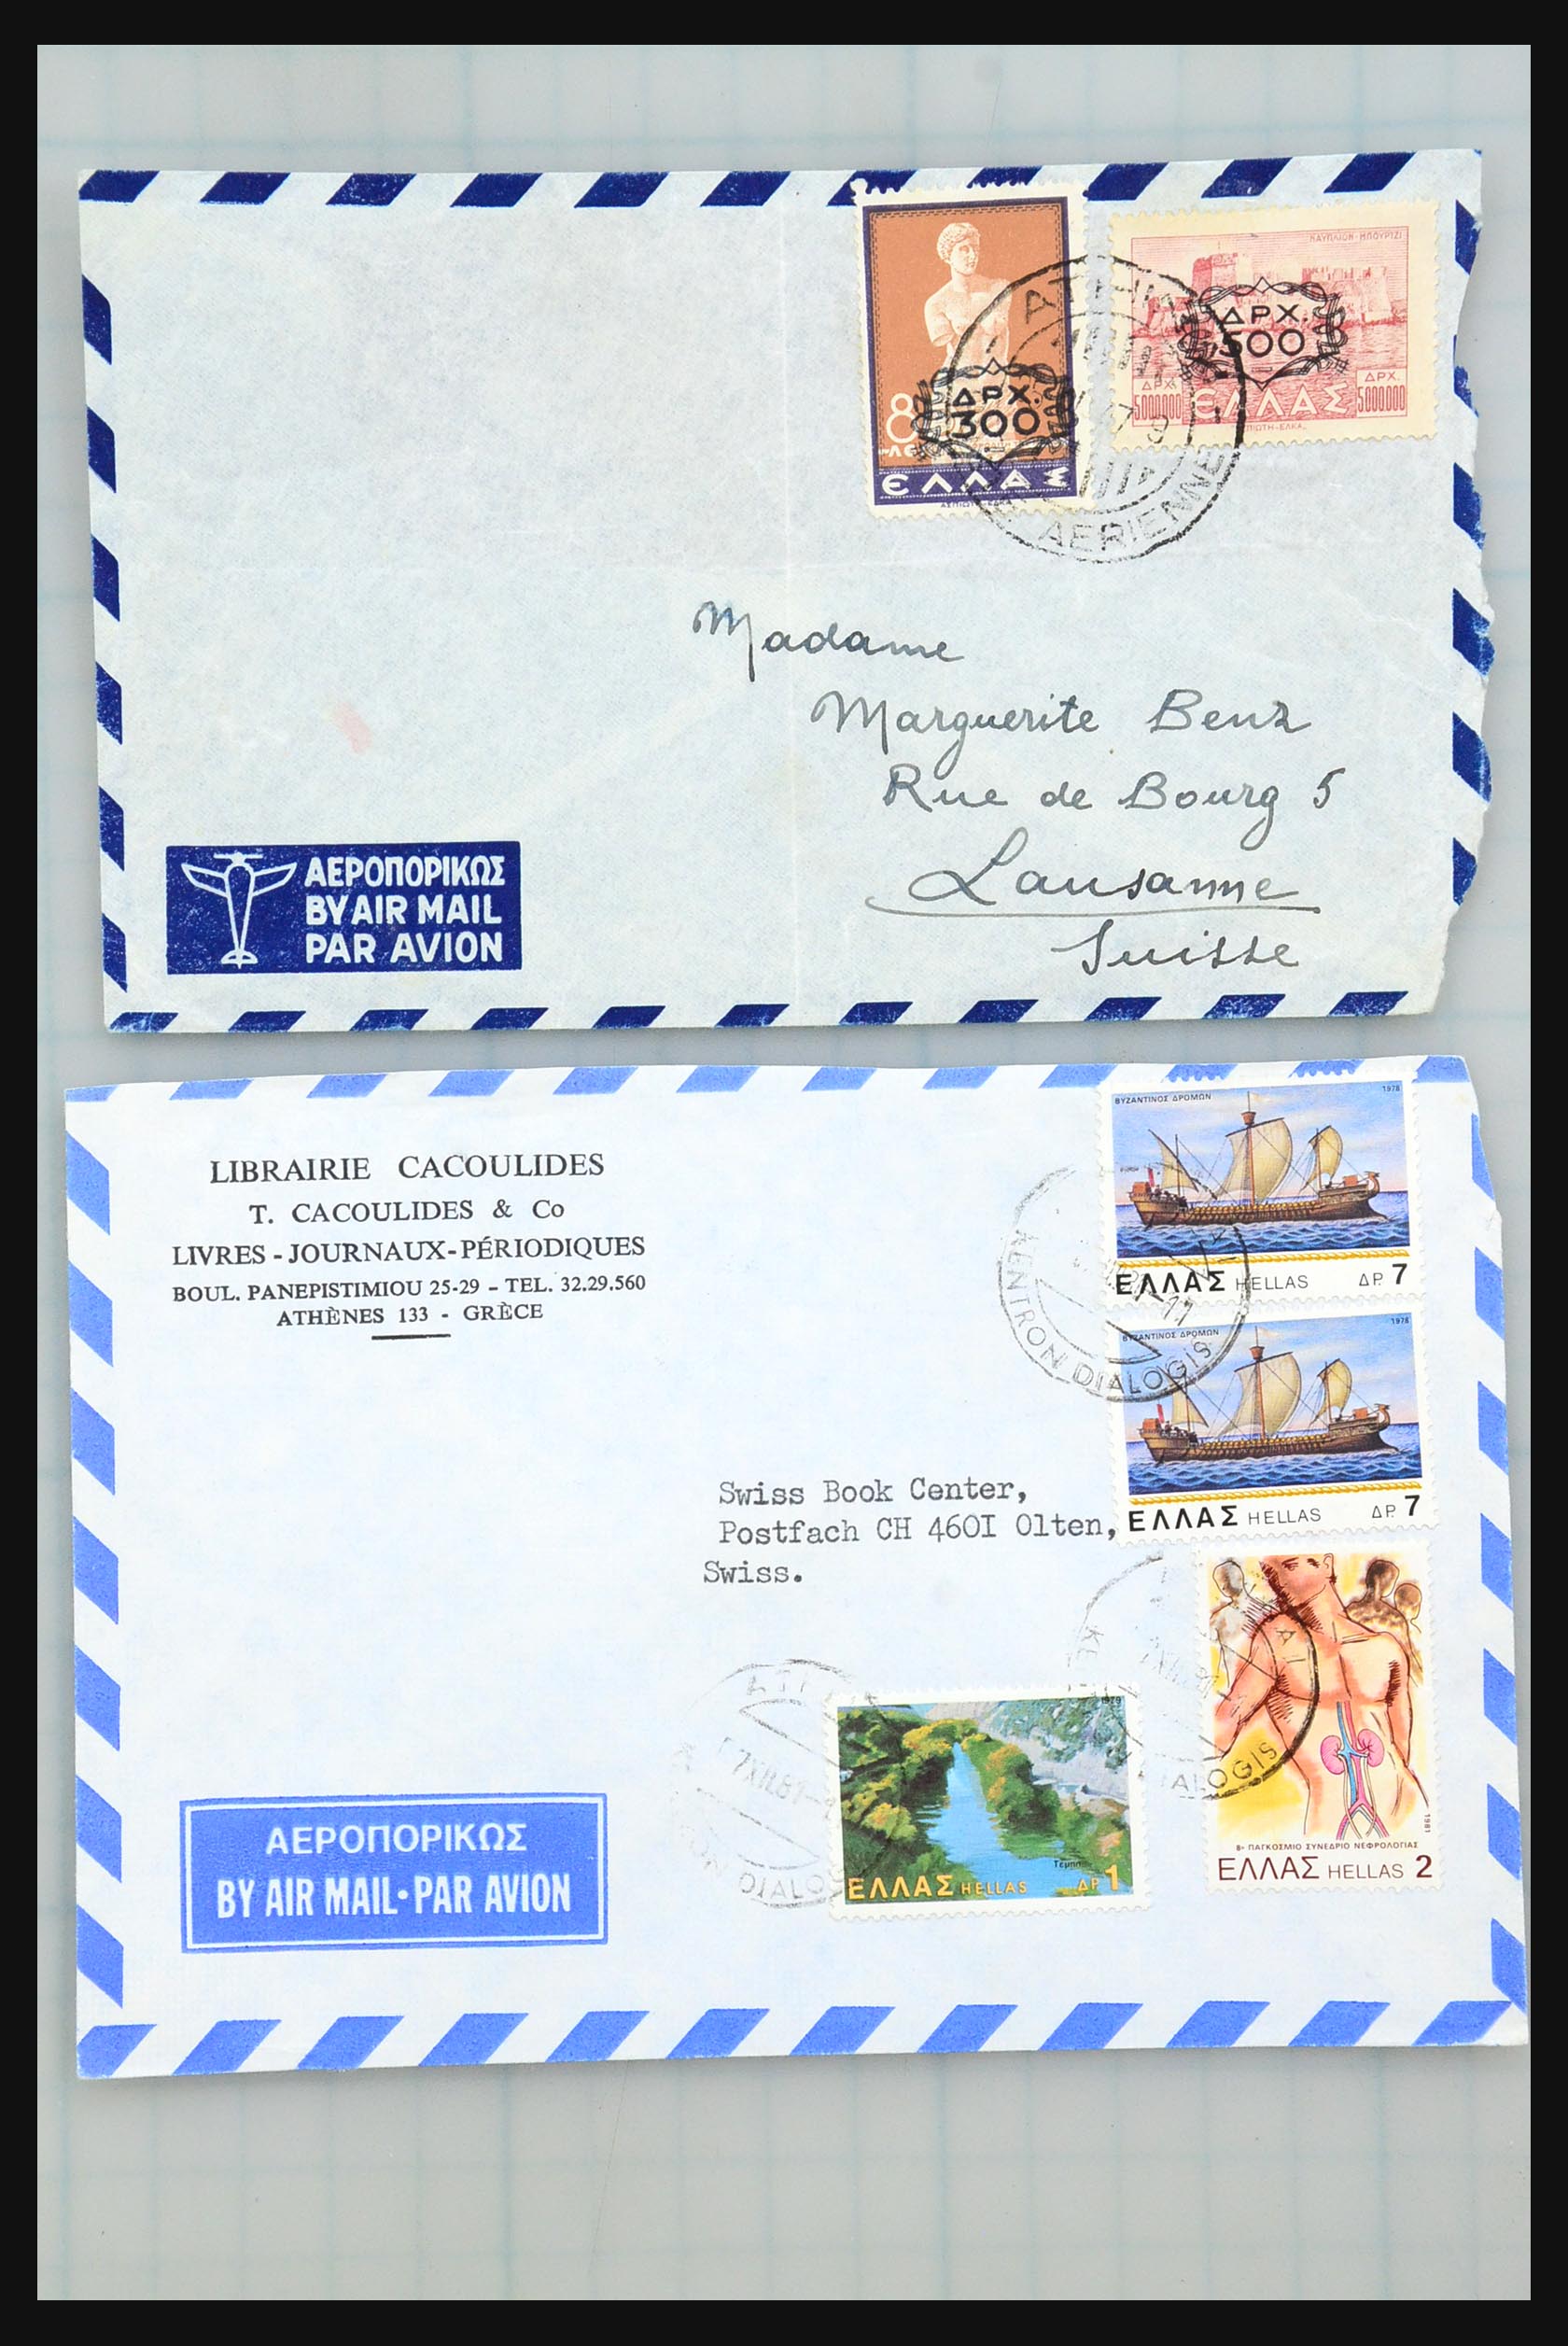 31358 115 - 31358 Portugal/Luxemburg/Griekenland brieven 1880-1960.